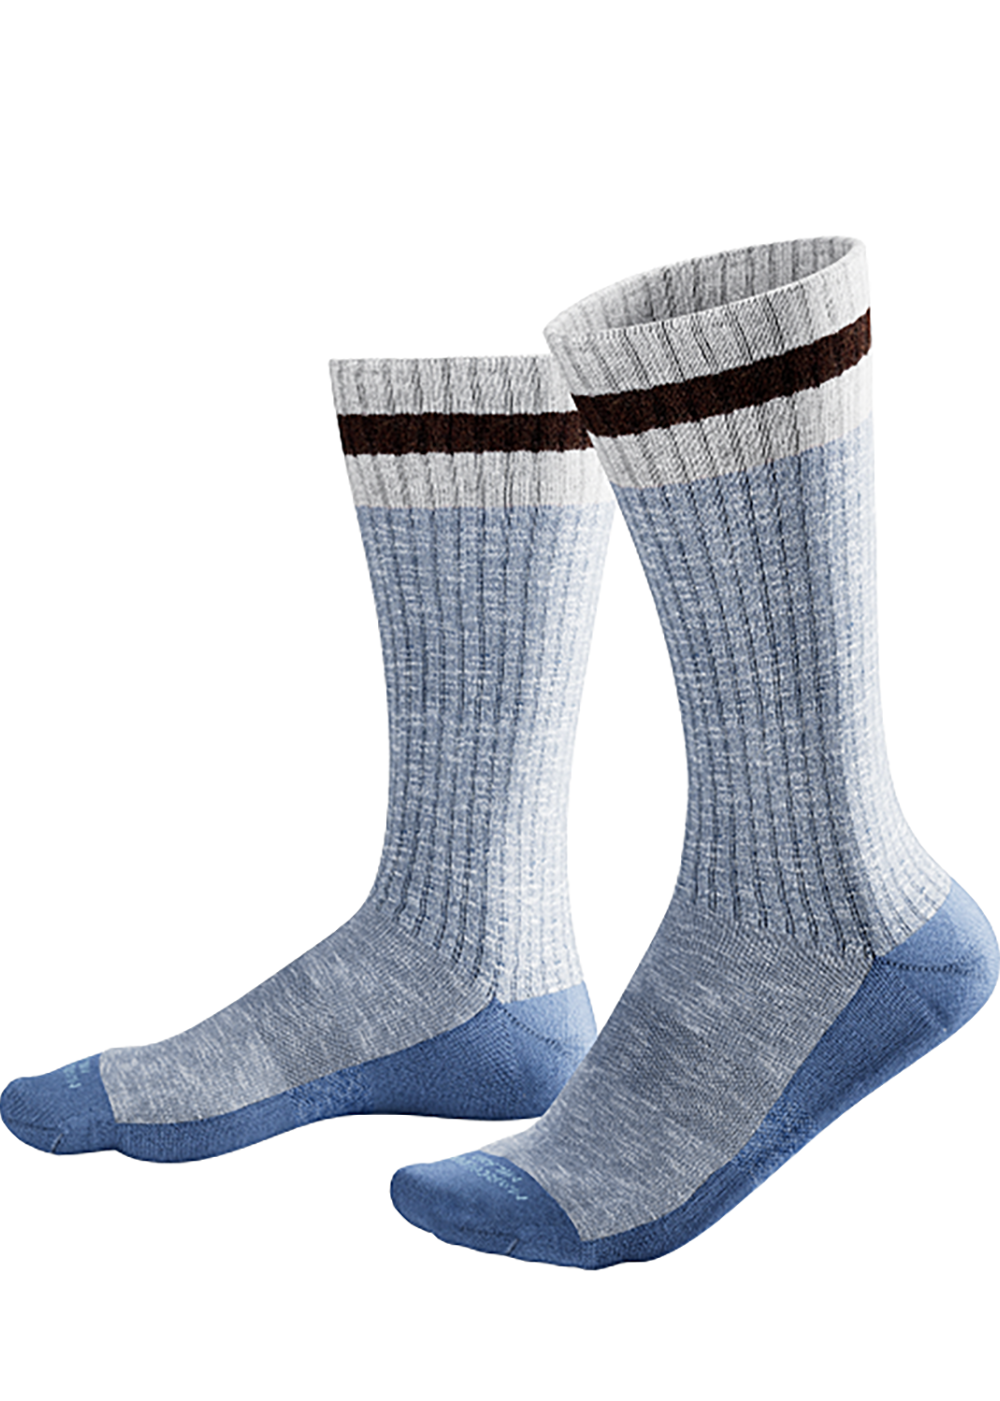 Pima Cotton Preppy Stripe Socks - Light blue denim - Marcoliani Canada - Danali